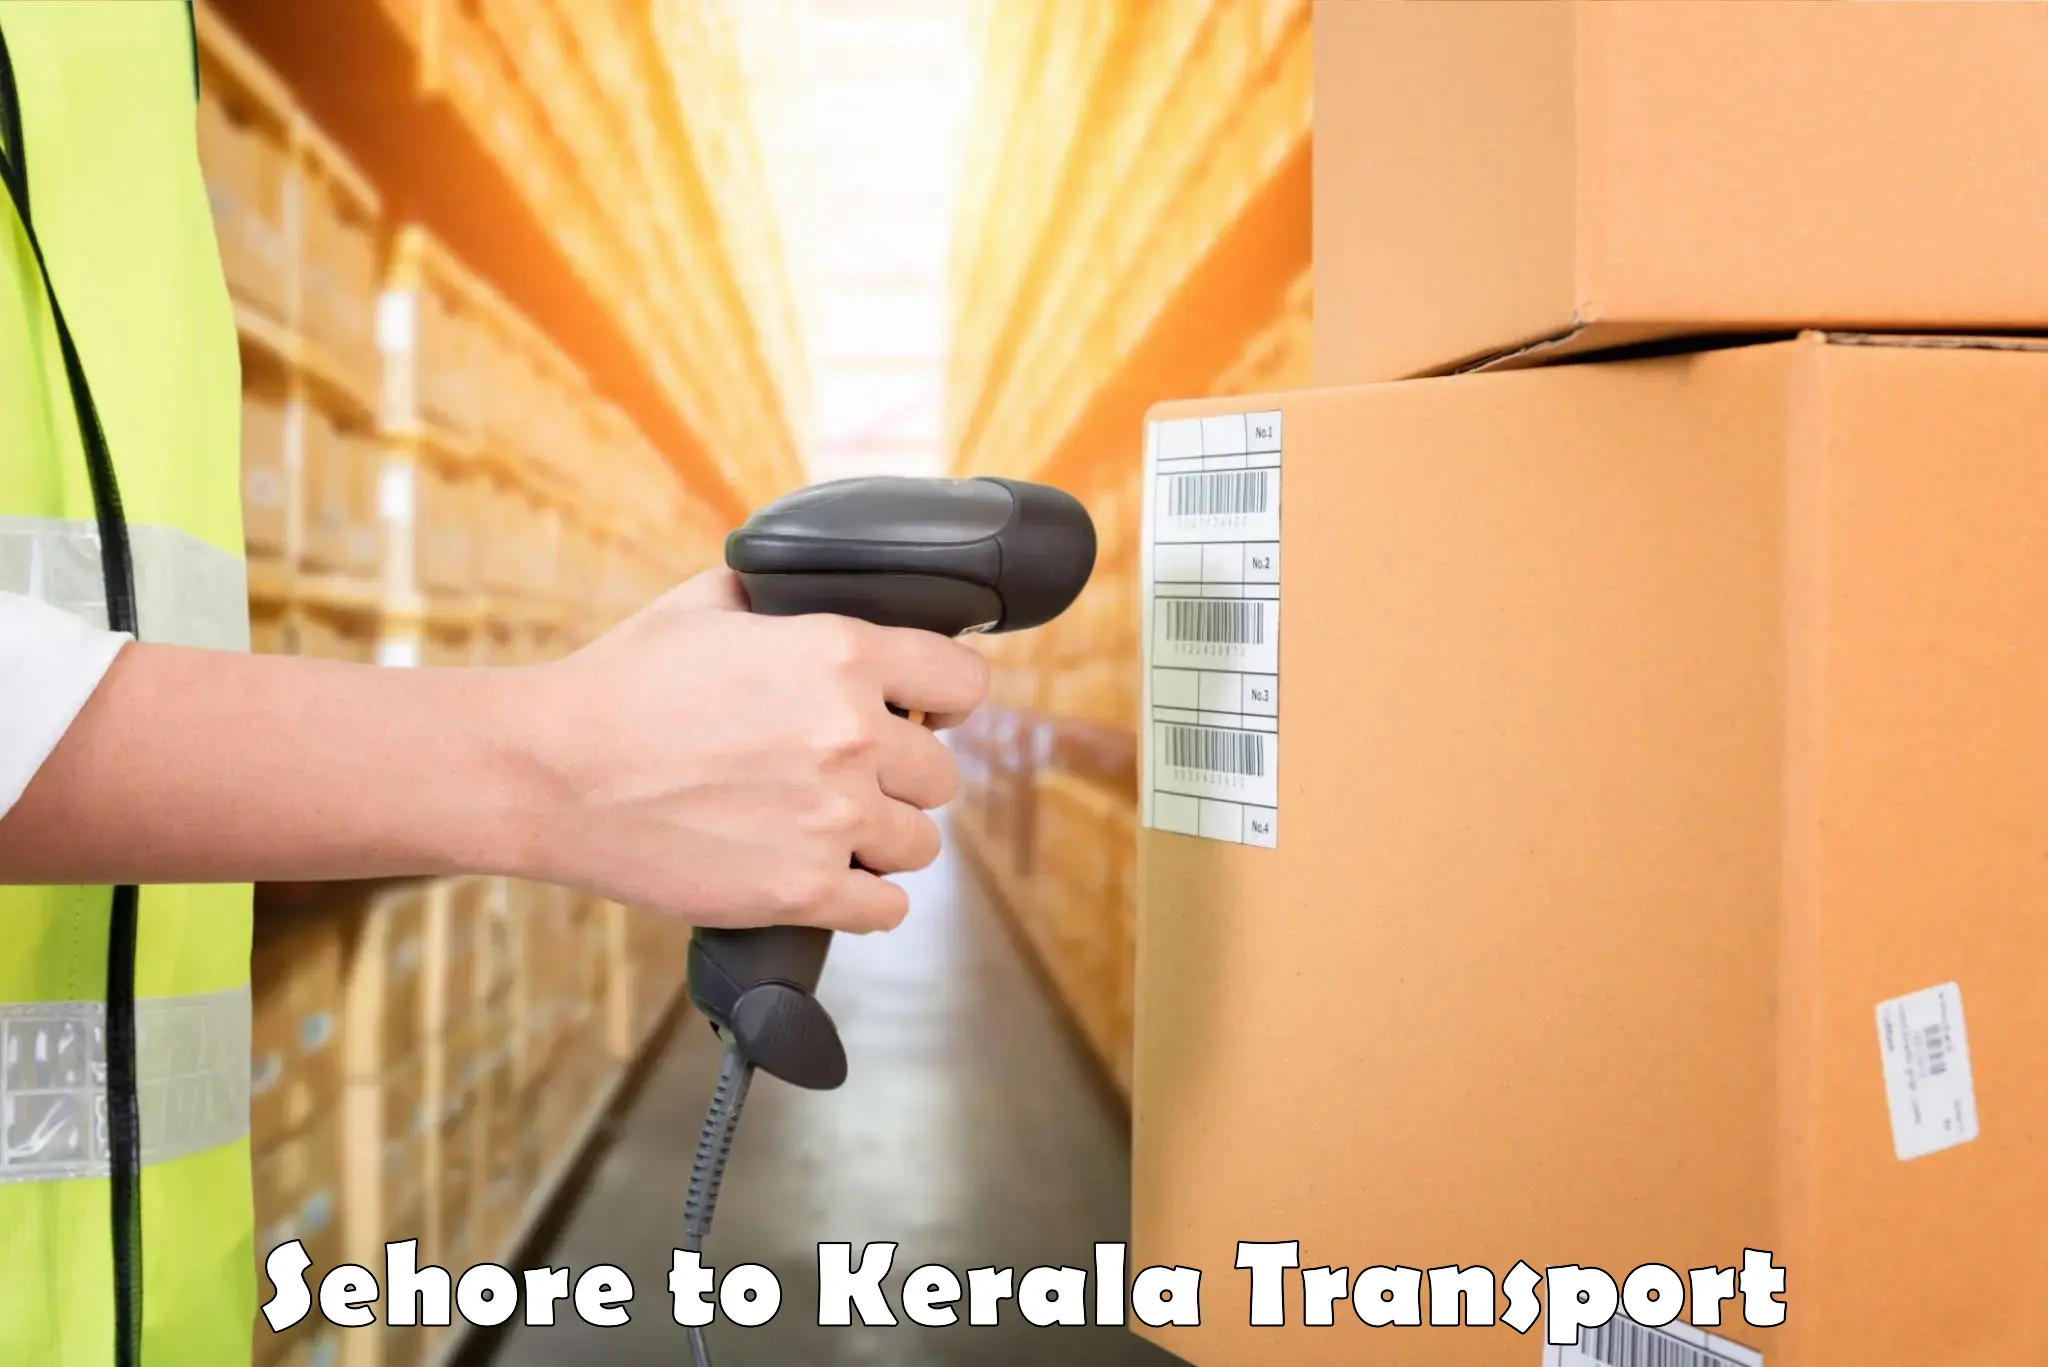 Nearest transport service Sehore to Kothamangalam